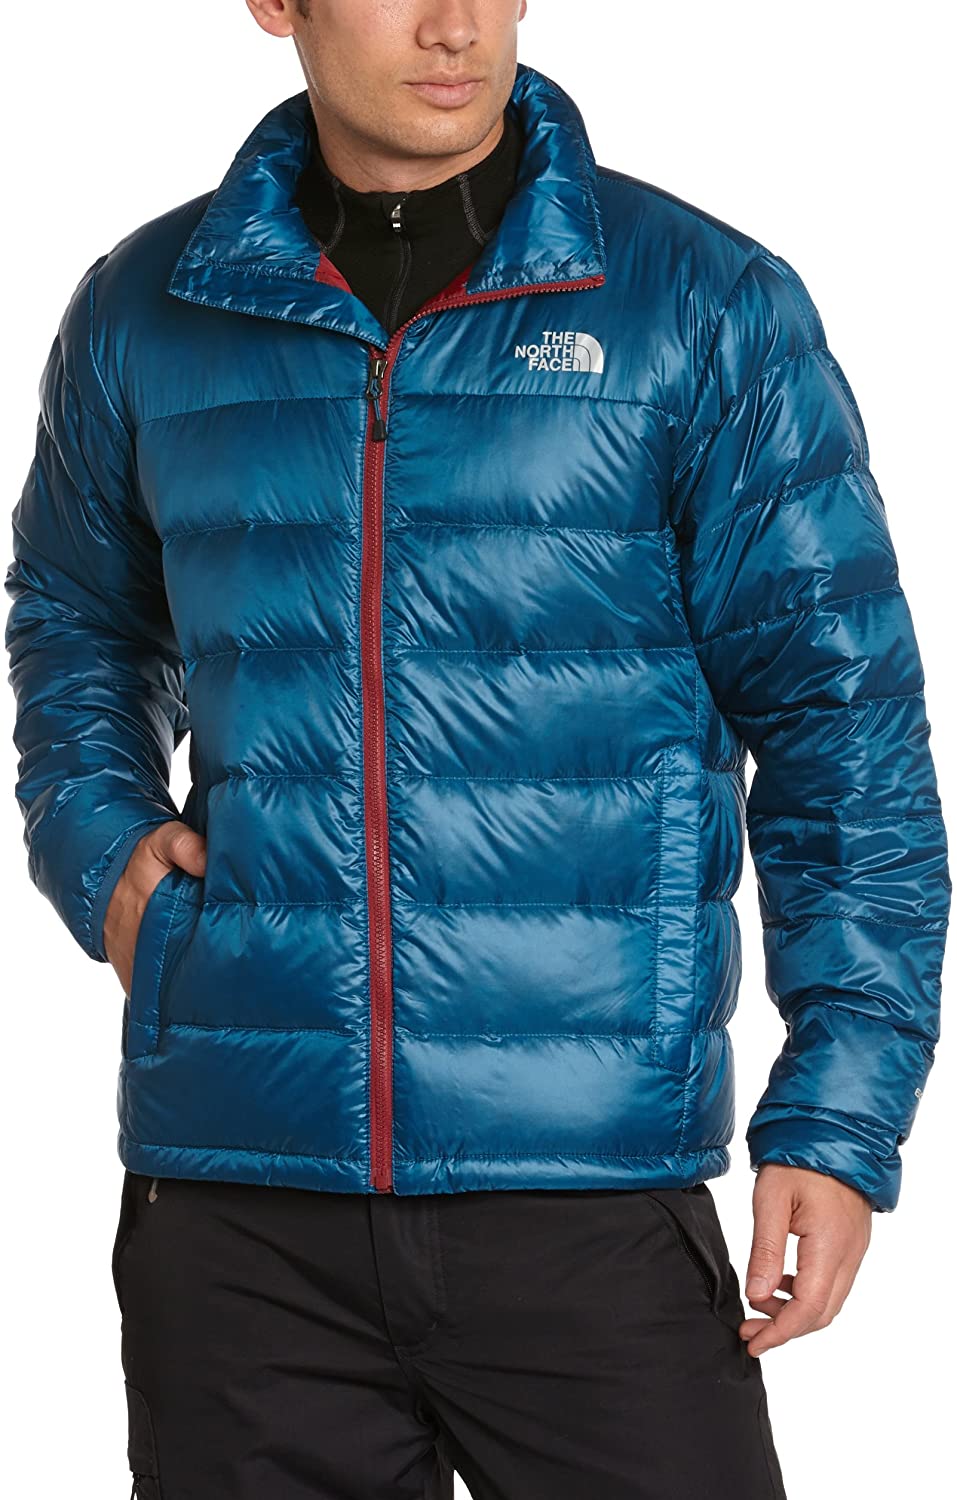 Venta > chaqueta north face azul hombre > en stock